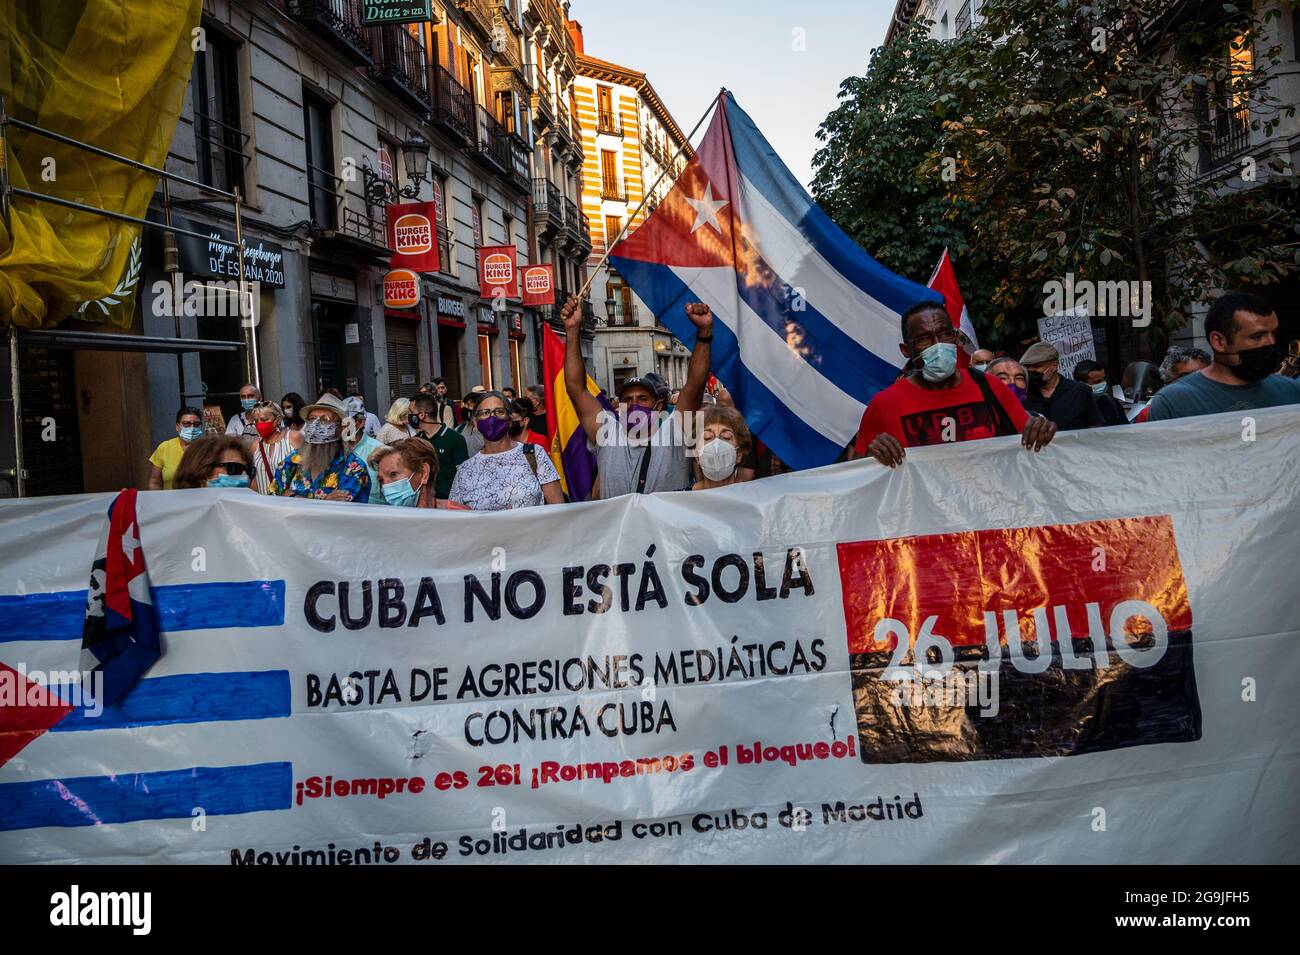 Madrid, Espagne. 26 juillet 2021. Des manifestants portant des drapeaux et des pancartes lors d'une manifestation contre l'embargo économique américain sur Cuba, coïncidant avec le 26 juillet, jour où la révolution cubaine a commencé en 1953, il y a 68 ans. Credit: Marcos del Mazo/Alay Live News Banque D'Images